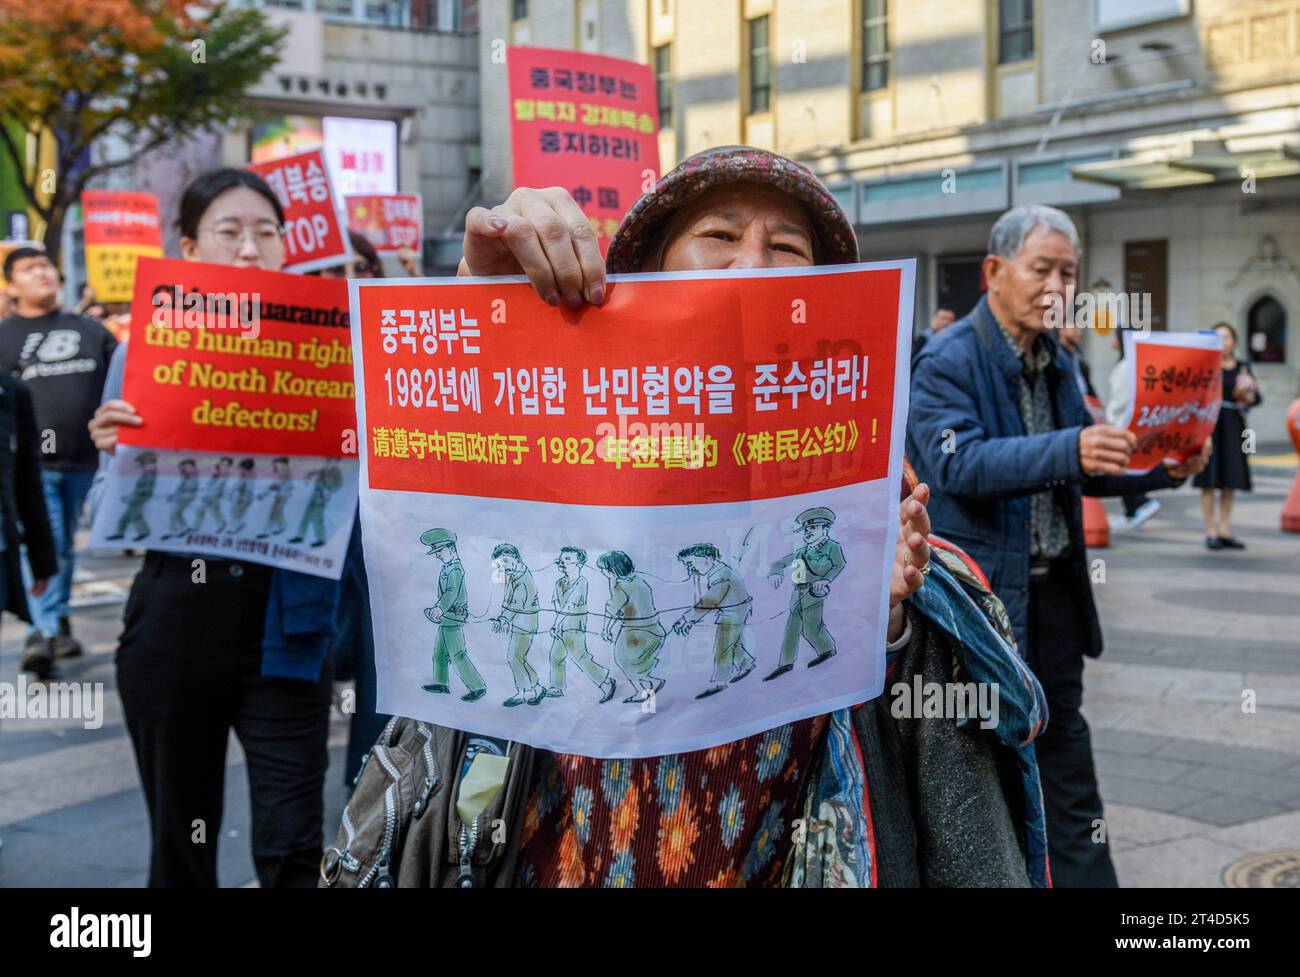 Südkoreanische Aktivisten und nordkoreanische Überläufer halten während eines Protestes in der Nähe der chinesischen Botschaft in Seoul Plakate, die ein Ende der Rückführung nordkoreanischer Überläufer aus China fordern. Menschenrechtsorganisationen behaupteten Anfang Oktober, dass China etwa 600 nordkoreanische Überläufer, die in seinen nordöstlichen Regionen festgenommen wurden, gewaltsam in den Norden zurückschickte. Seoul hat bestätigt, dass die Rückführung stattgefunden hat, ohne die Zahl der Rückkehrer anzugeben. Zehntausende nordkoreanischer Überläufer sollen sich in China versteckt haben, in der Hoffnung, in den Südosten zu reisen Stockfoto